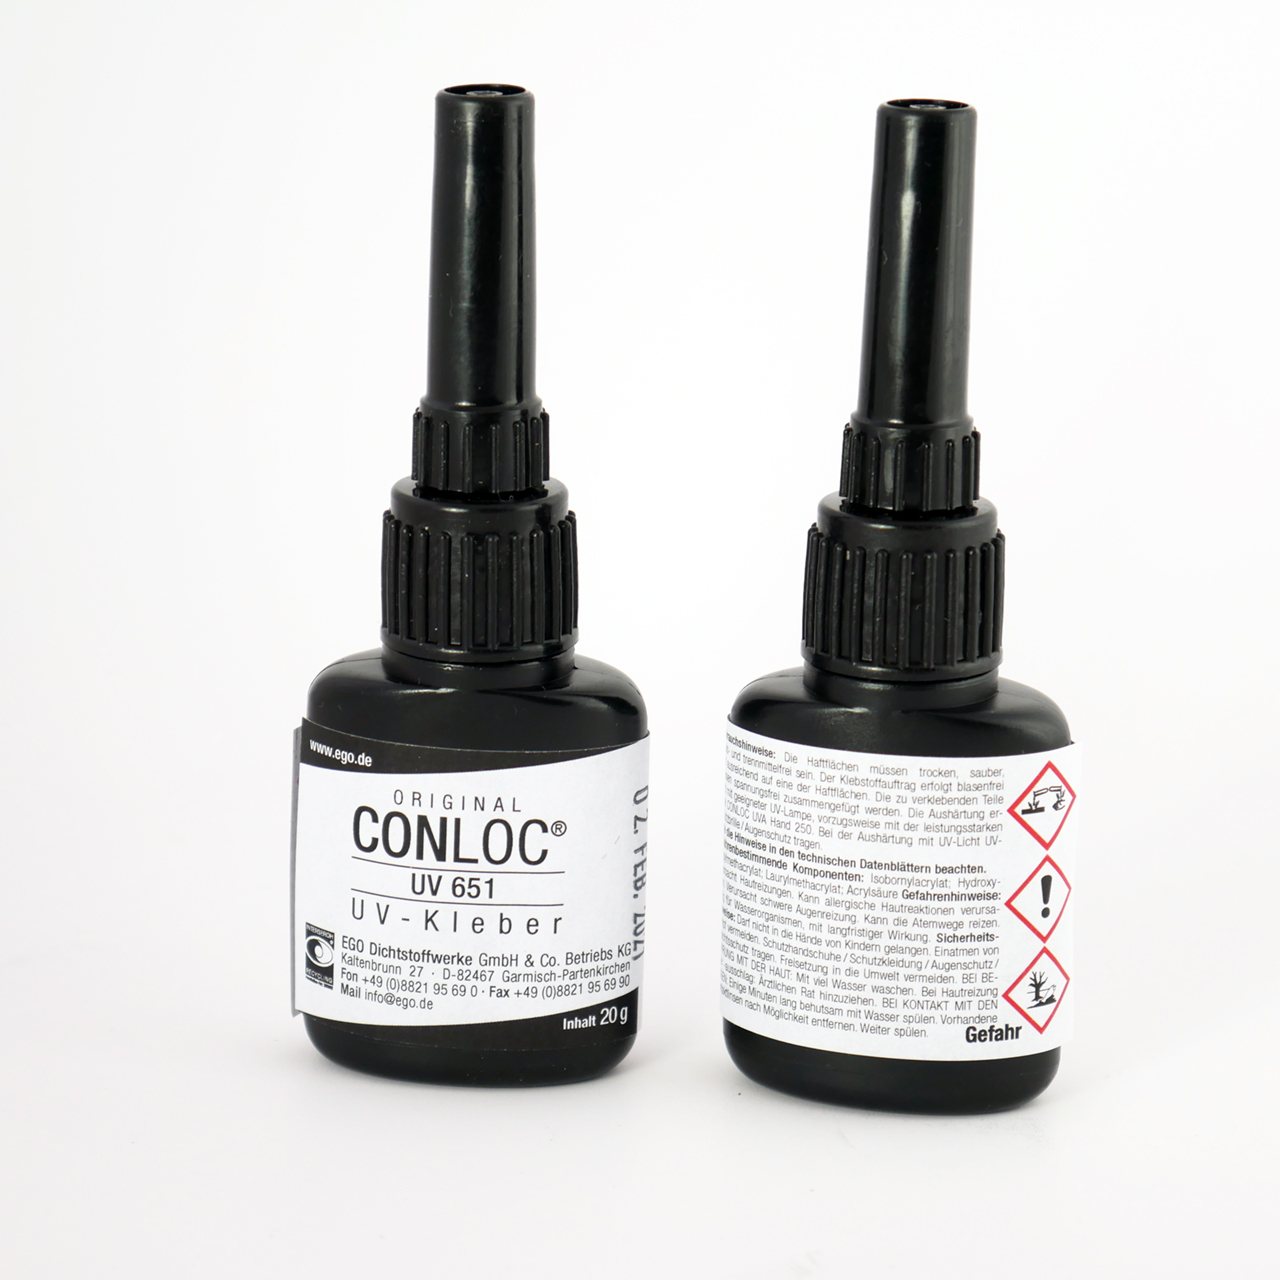 CONLOC® UV 651 UV Adhesive 20g